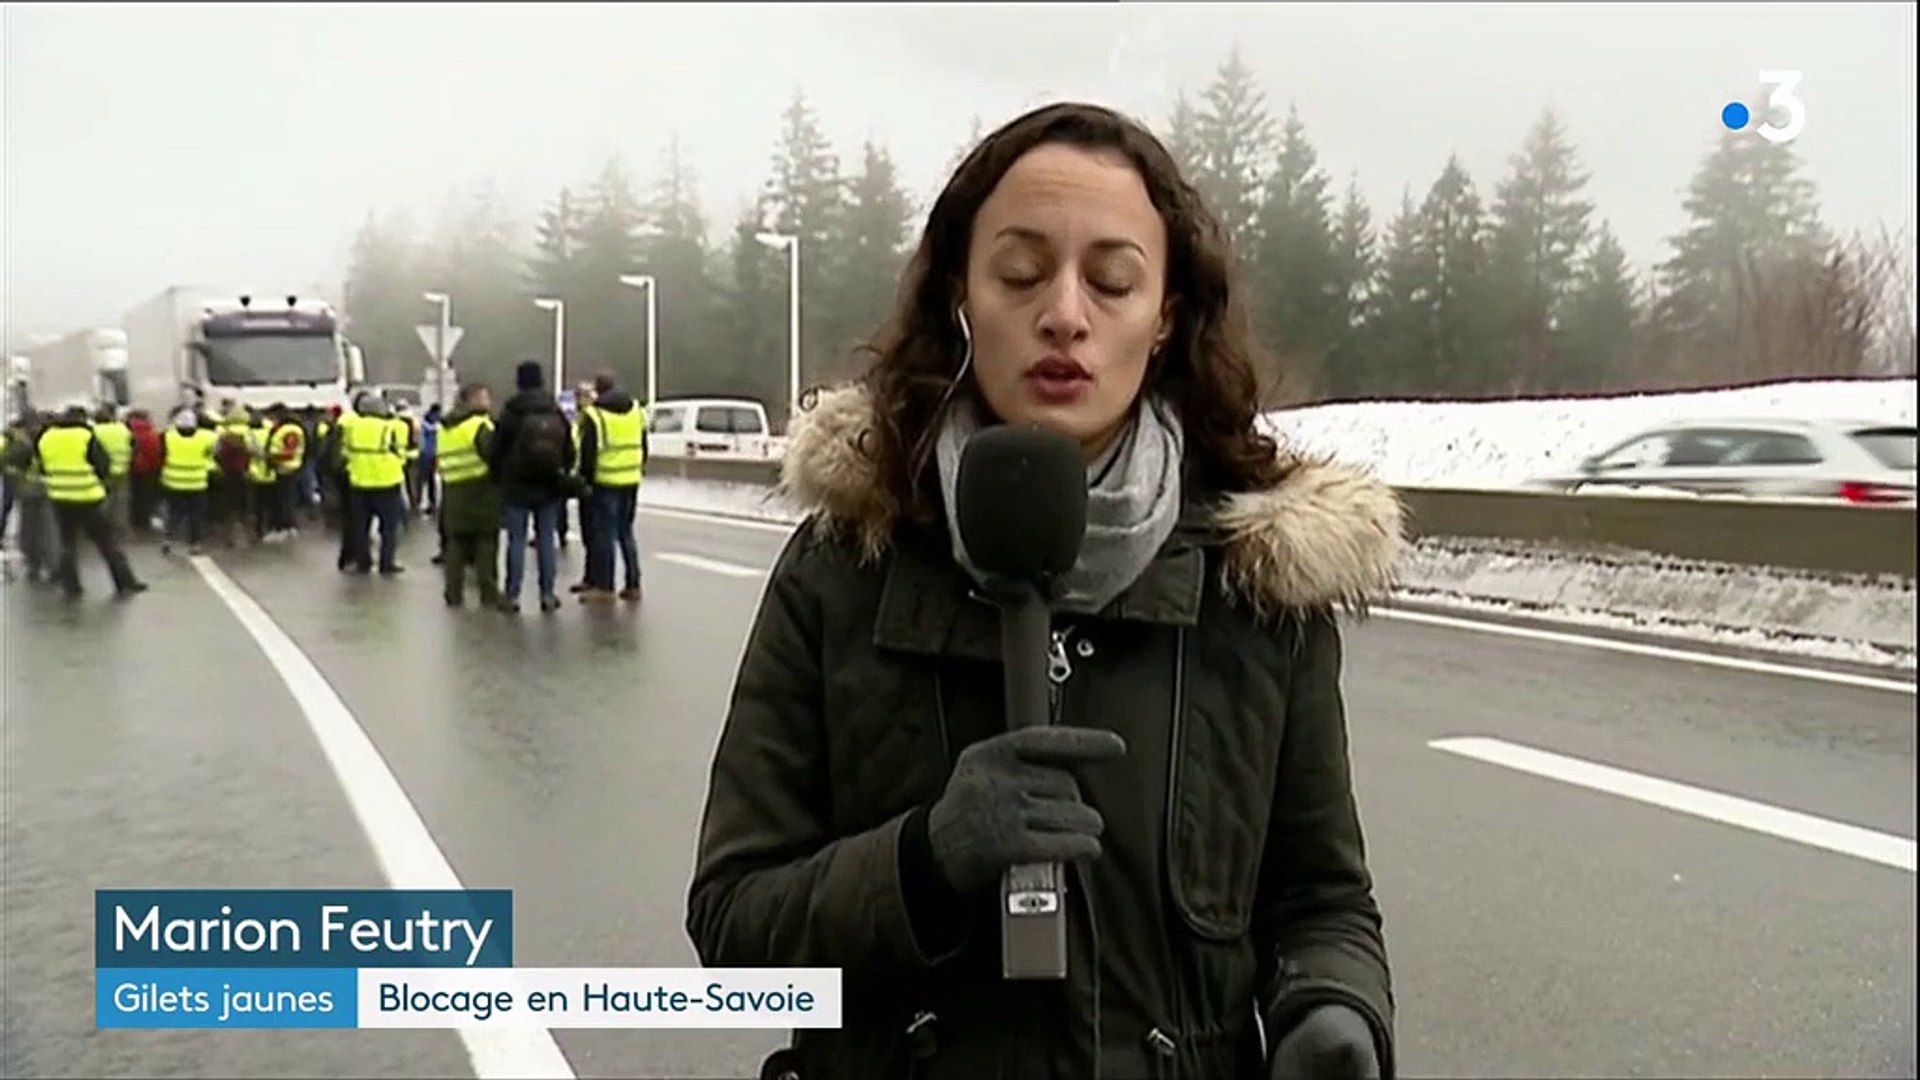 Gilets jaunes" : blocage en Haute-Savoie - Vidéo Dailymotion